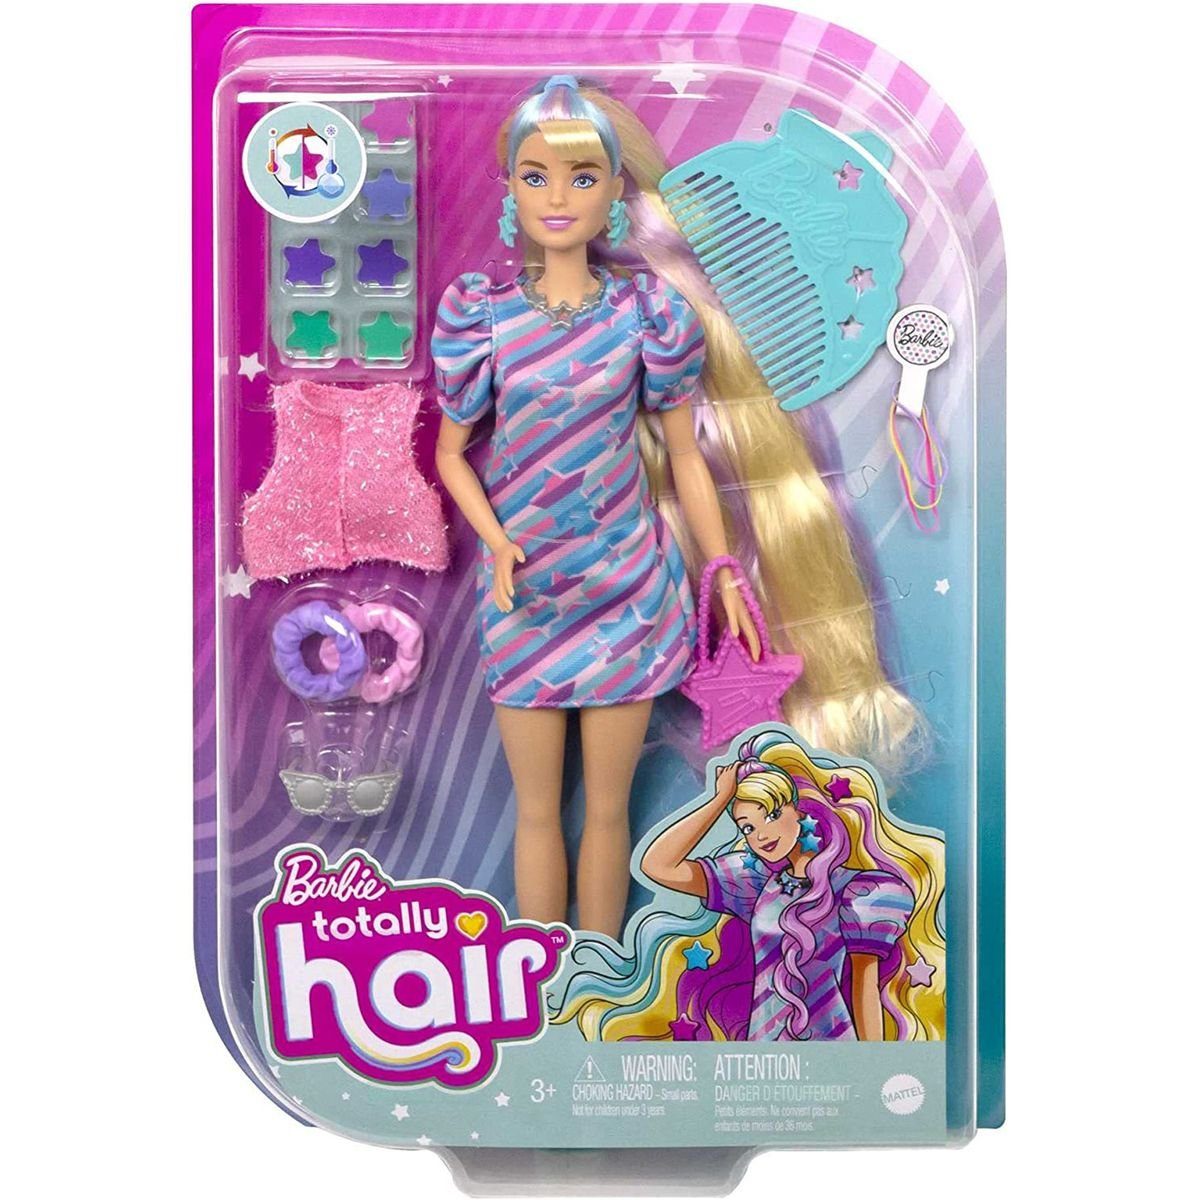 Zubehör - mit - Barbie Mattel® Kleid Hair Mattel Sternen-Print Totally - HCM88 Stehpuppe Puppe im